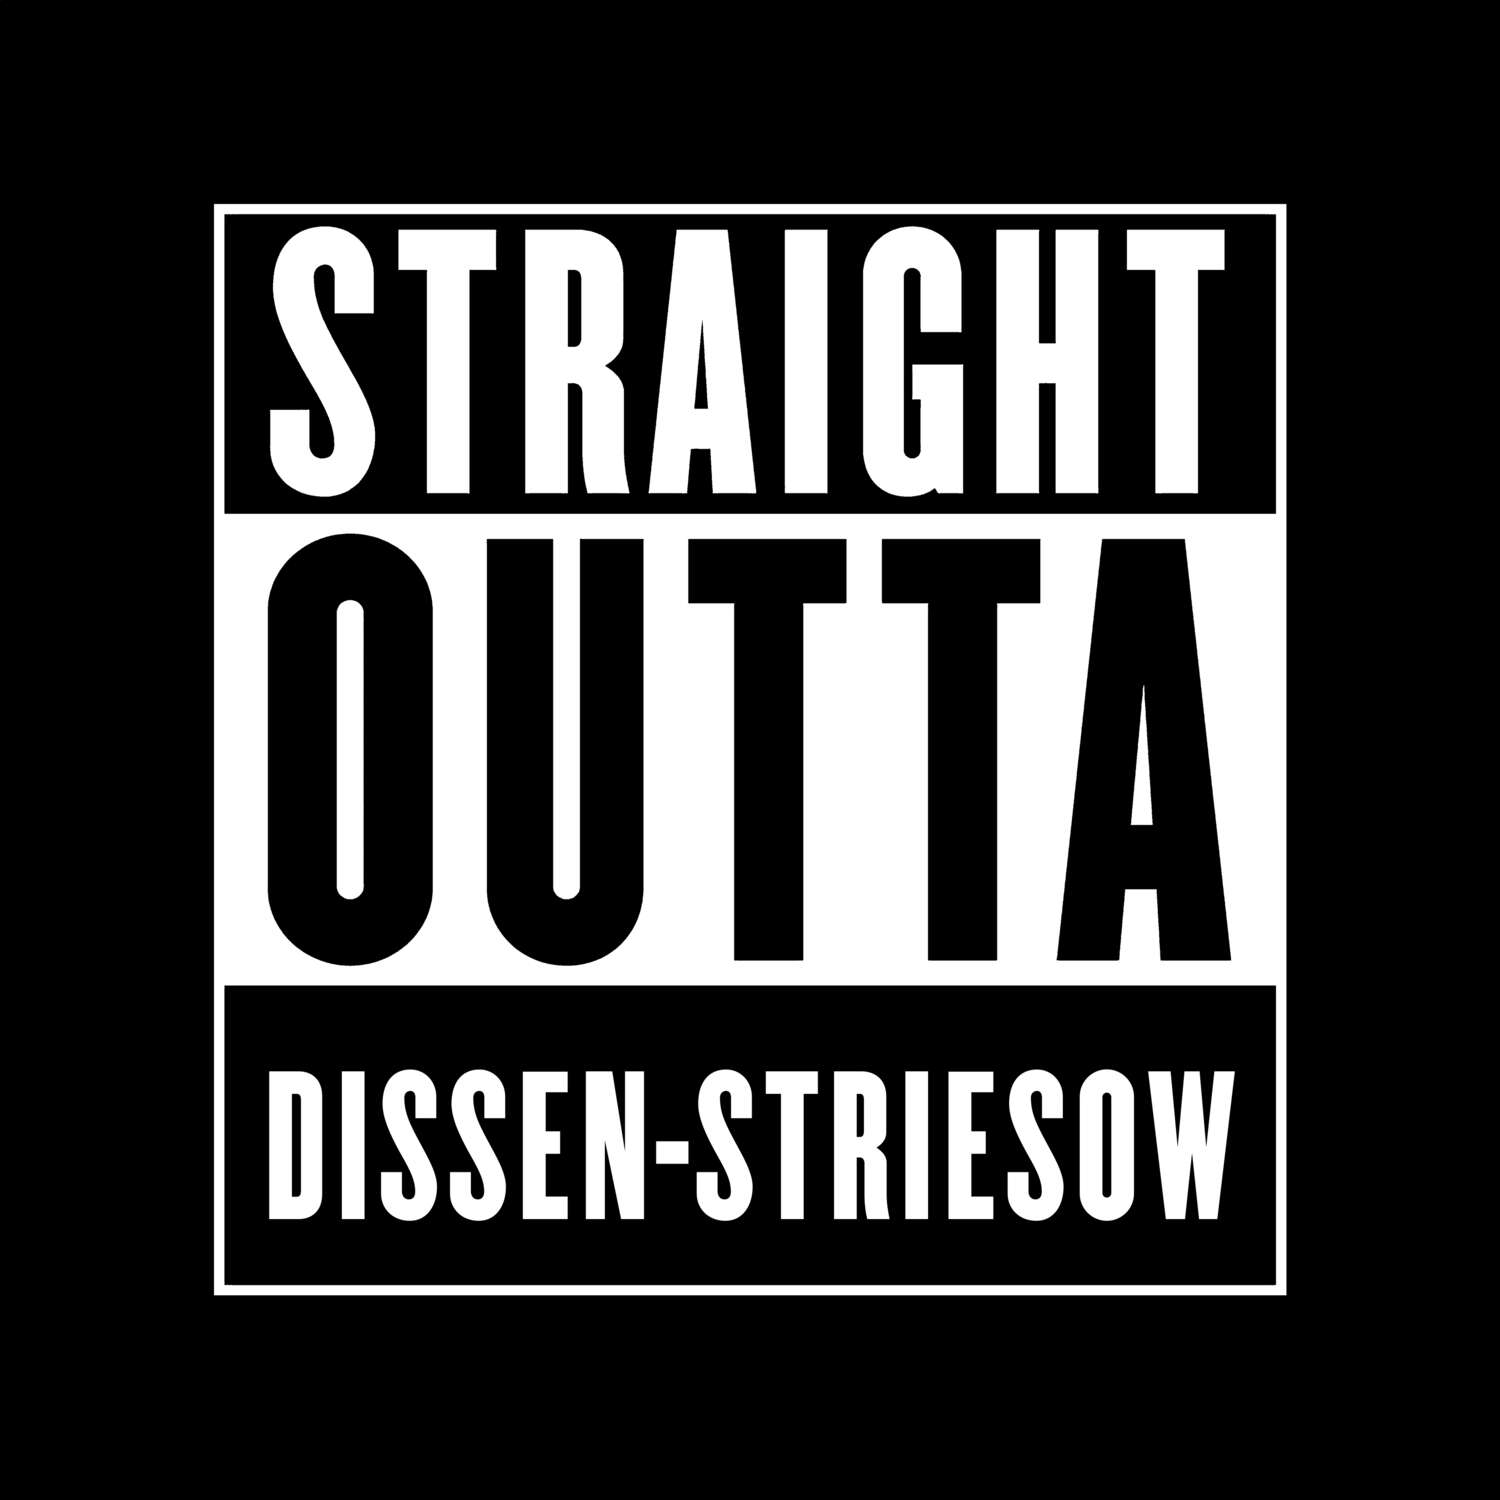 Dissen-Striesow T-Shirt »Straight Outta«